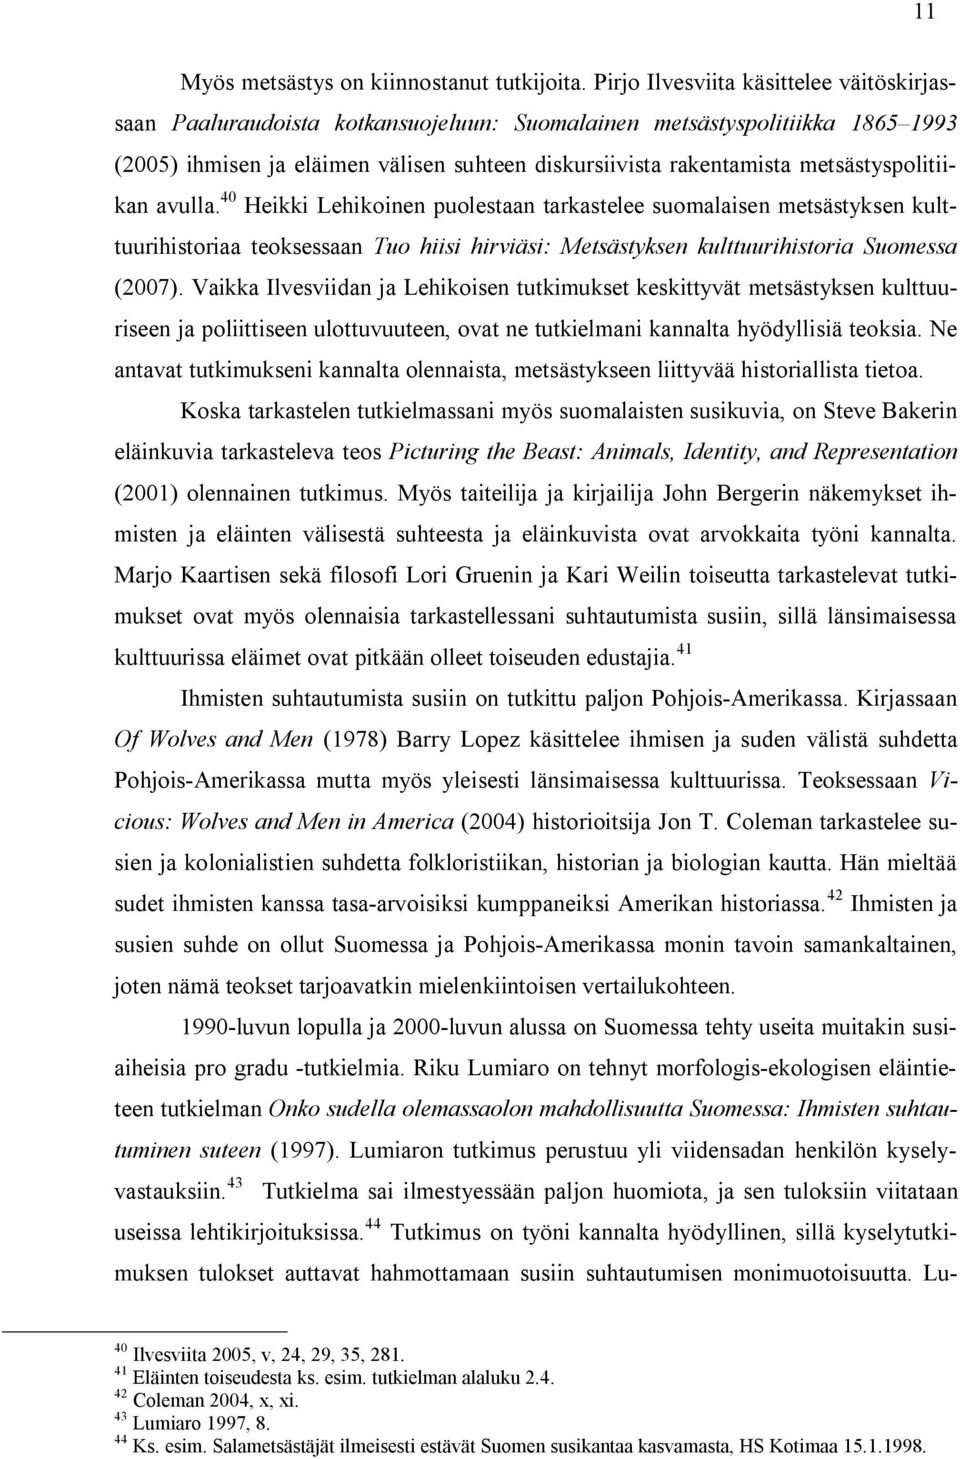 metsästyspolitiikan avulla. 40 Heikki Lehikoinen puolestaan tarkastelee suomalaisen metsästyksen kulttuurihistoriaa teoksessaan Tuo hiisi hirviäsi: Metsästyksen kulttuurihistoria Suomessa (2007).